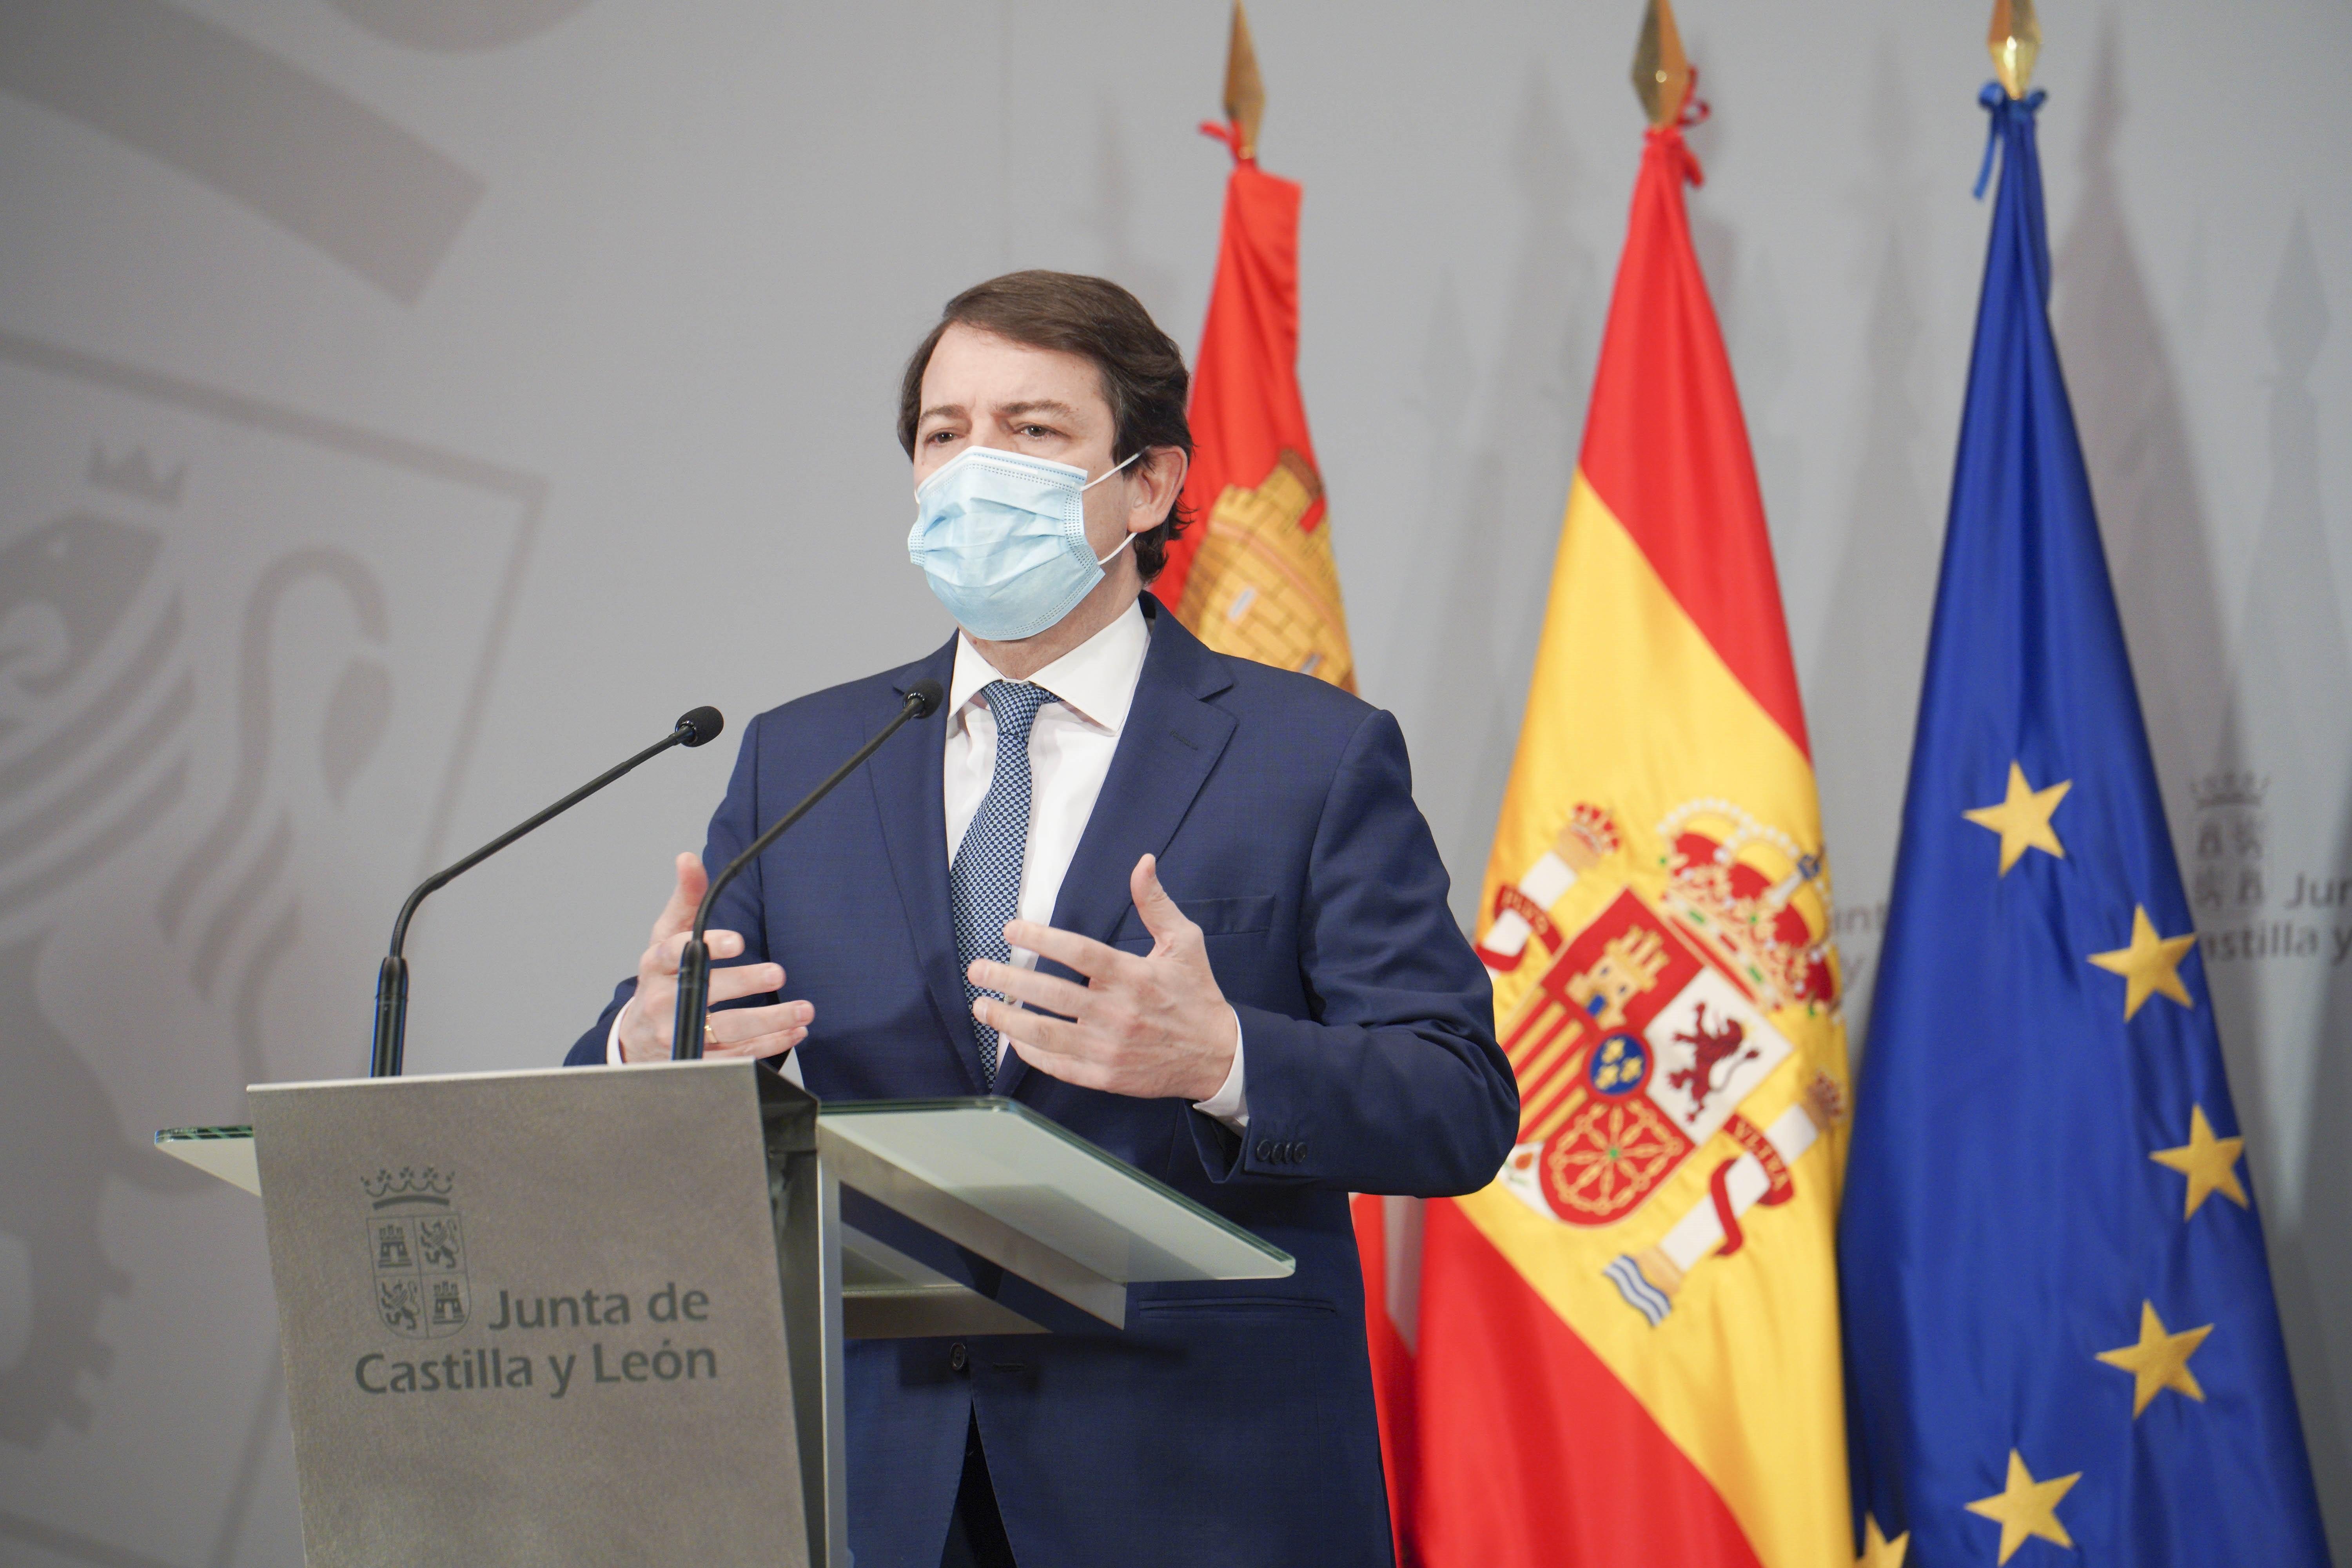 El Gobierno de Castilla y León insiste en adelantar el toque de queda a las 20.00 horas. Europa Press